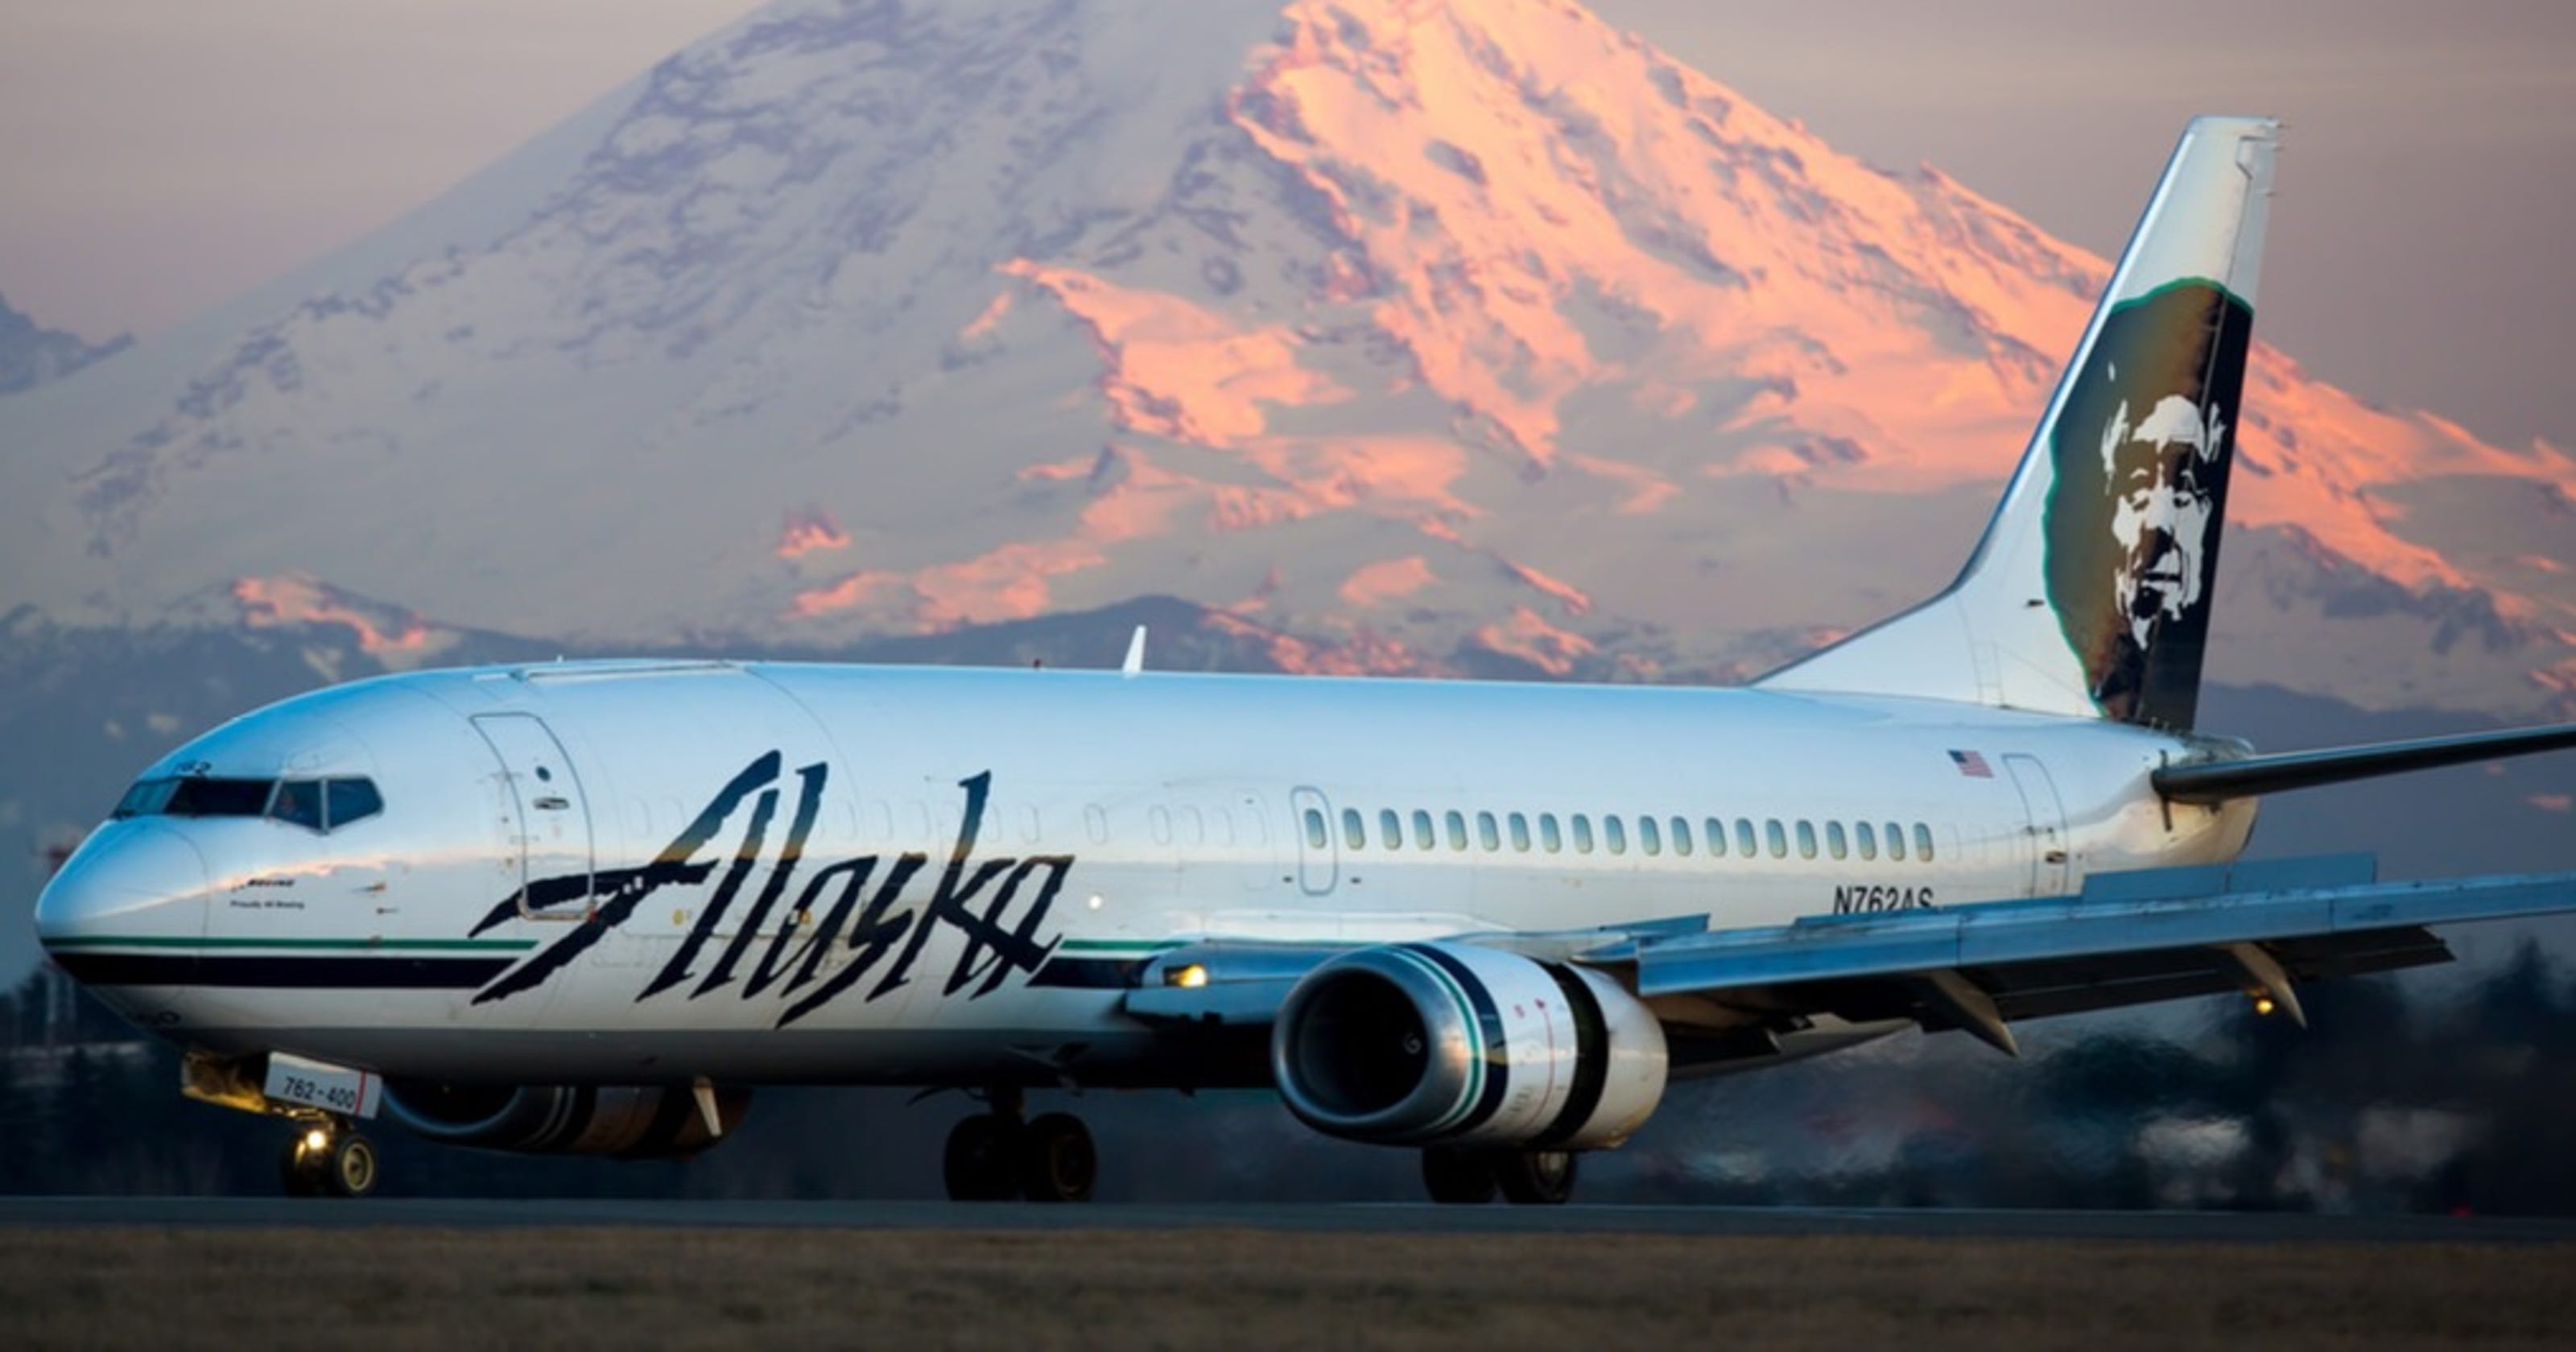 Alaska Airlines retiring its unique Boeing 737